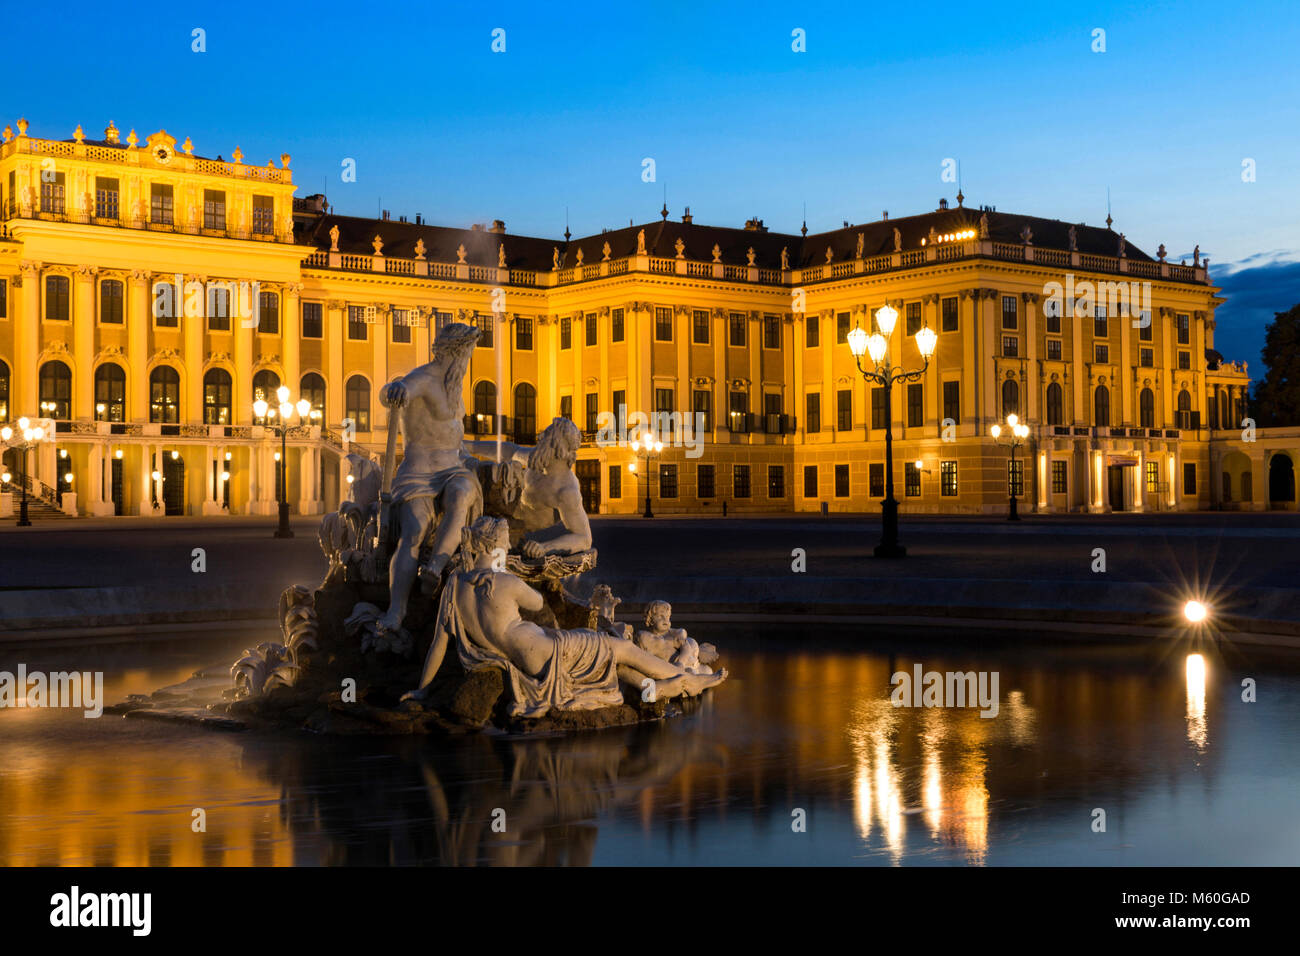 Le palais de Schönbrunn et l'une des Fontaines (esprits de Naiad sources et rivières) illuminé la nuit, Schonbrunn, Vienne, Autriche. Banque D'Images